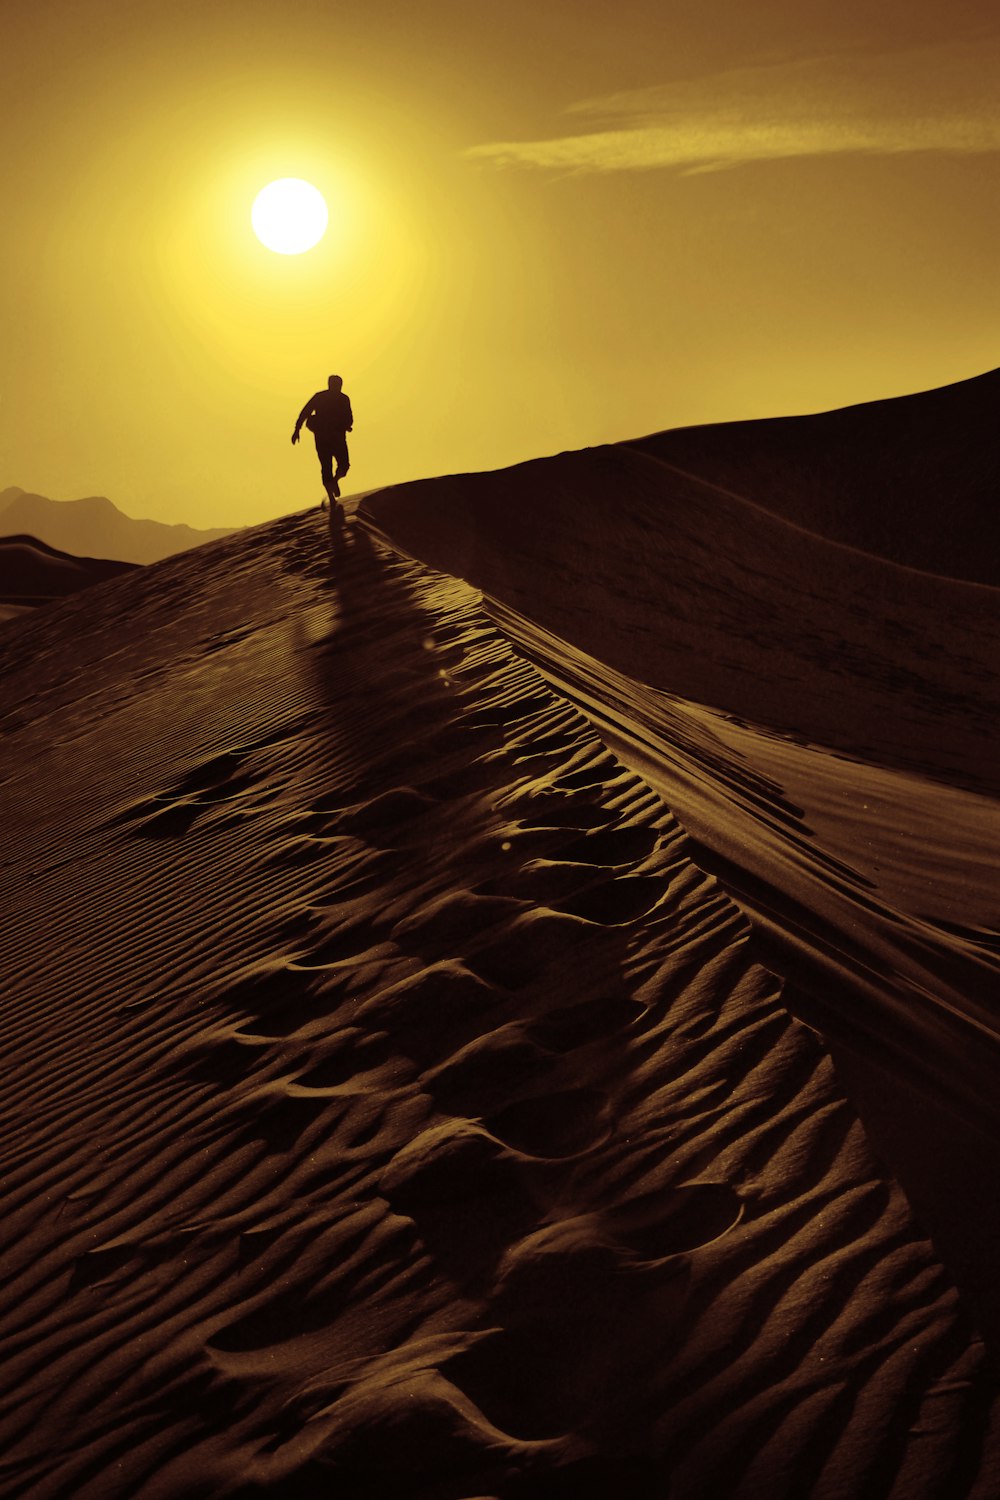 Person, die auf Sanddünen spazieren geht